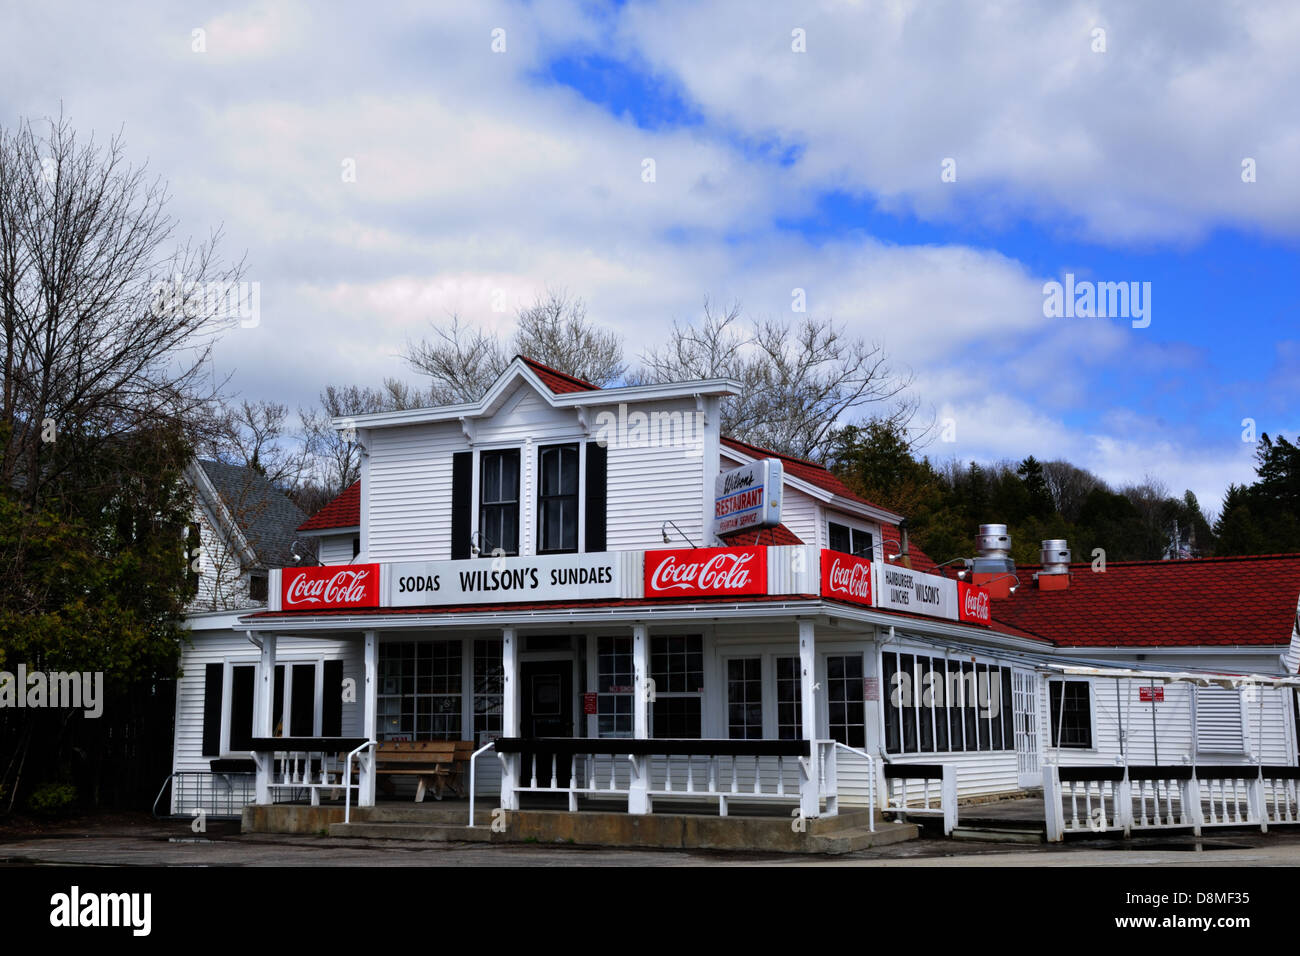 Wilson's ice cream parlor established in 1906, a landmark in Ephraim, Door County, Wisconsin Stock Photo